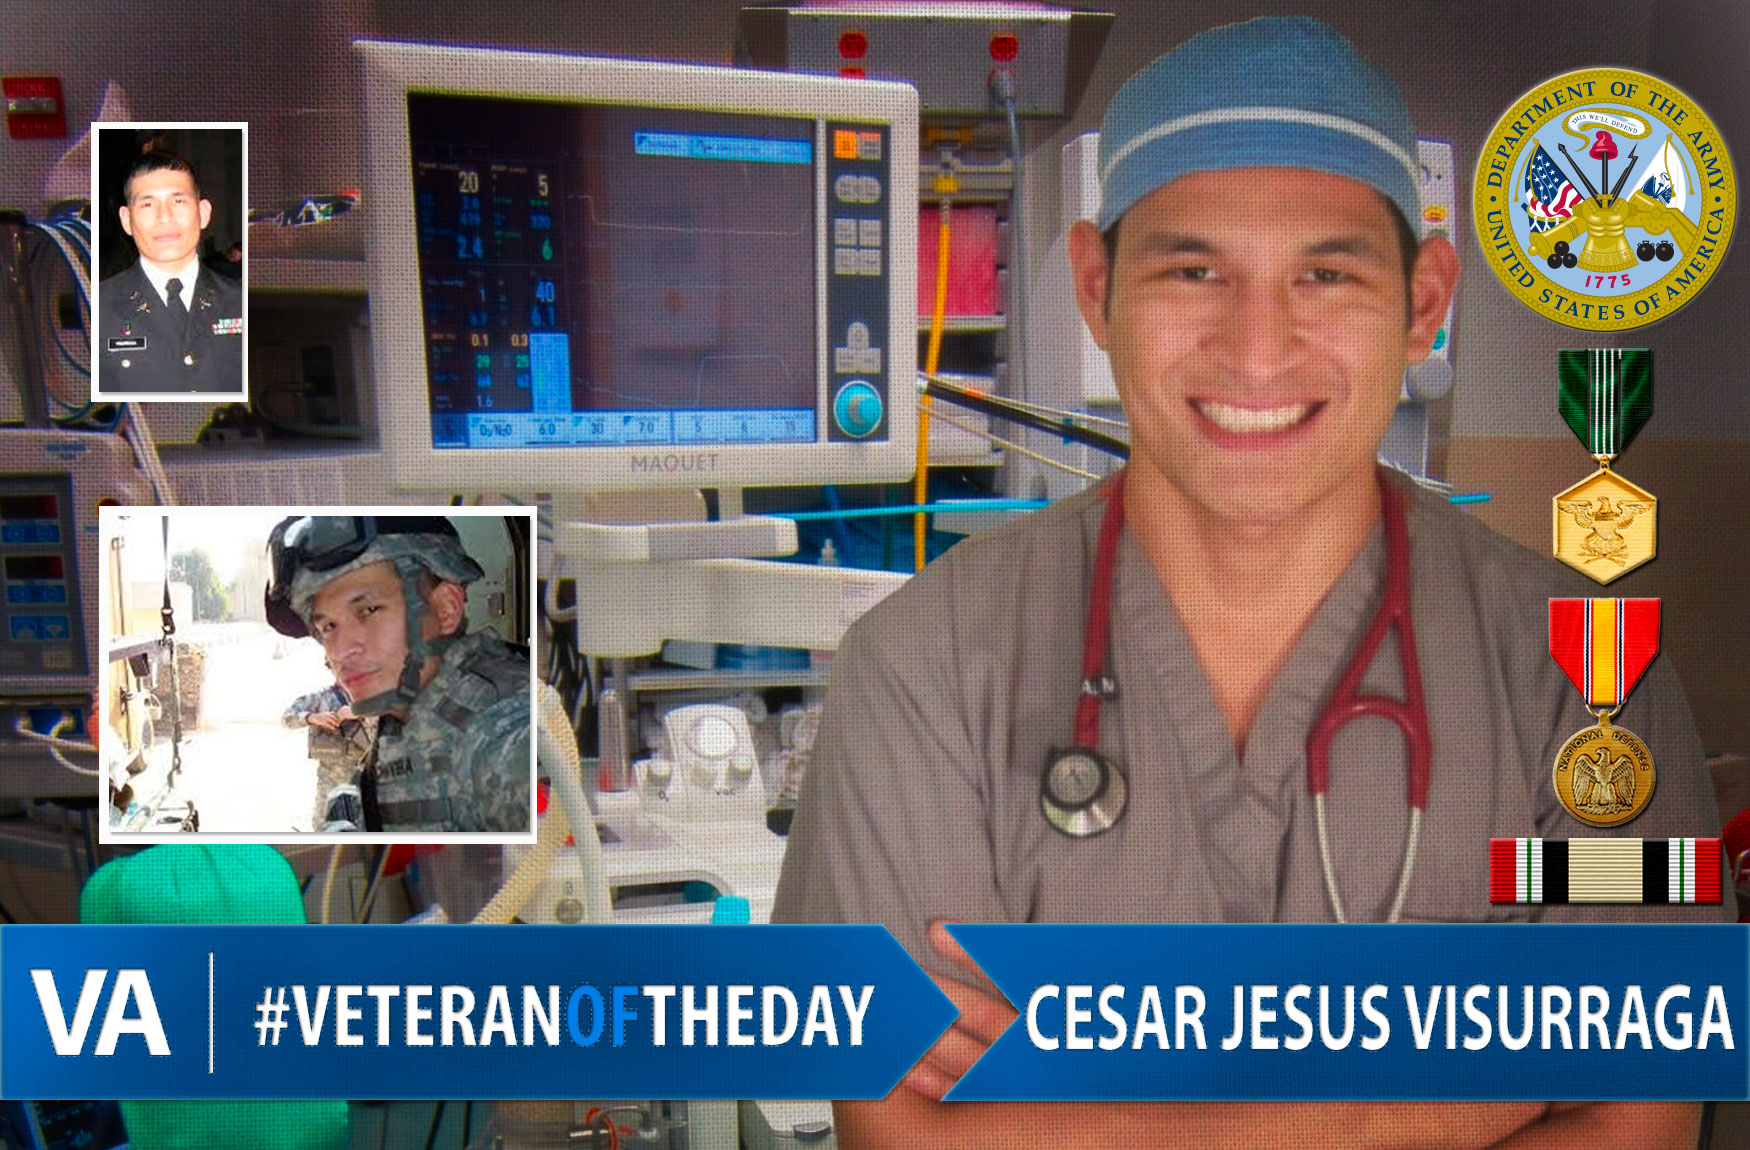 Cesar Jesus Visurraga - Veteran of the Day